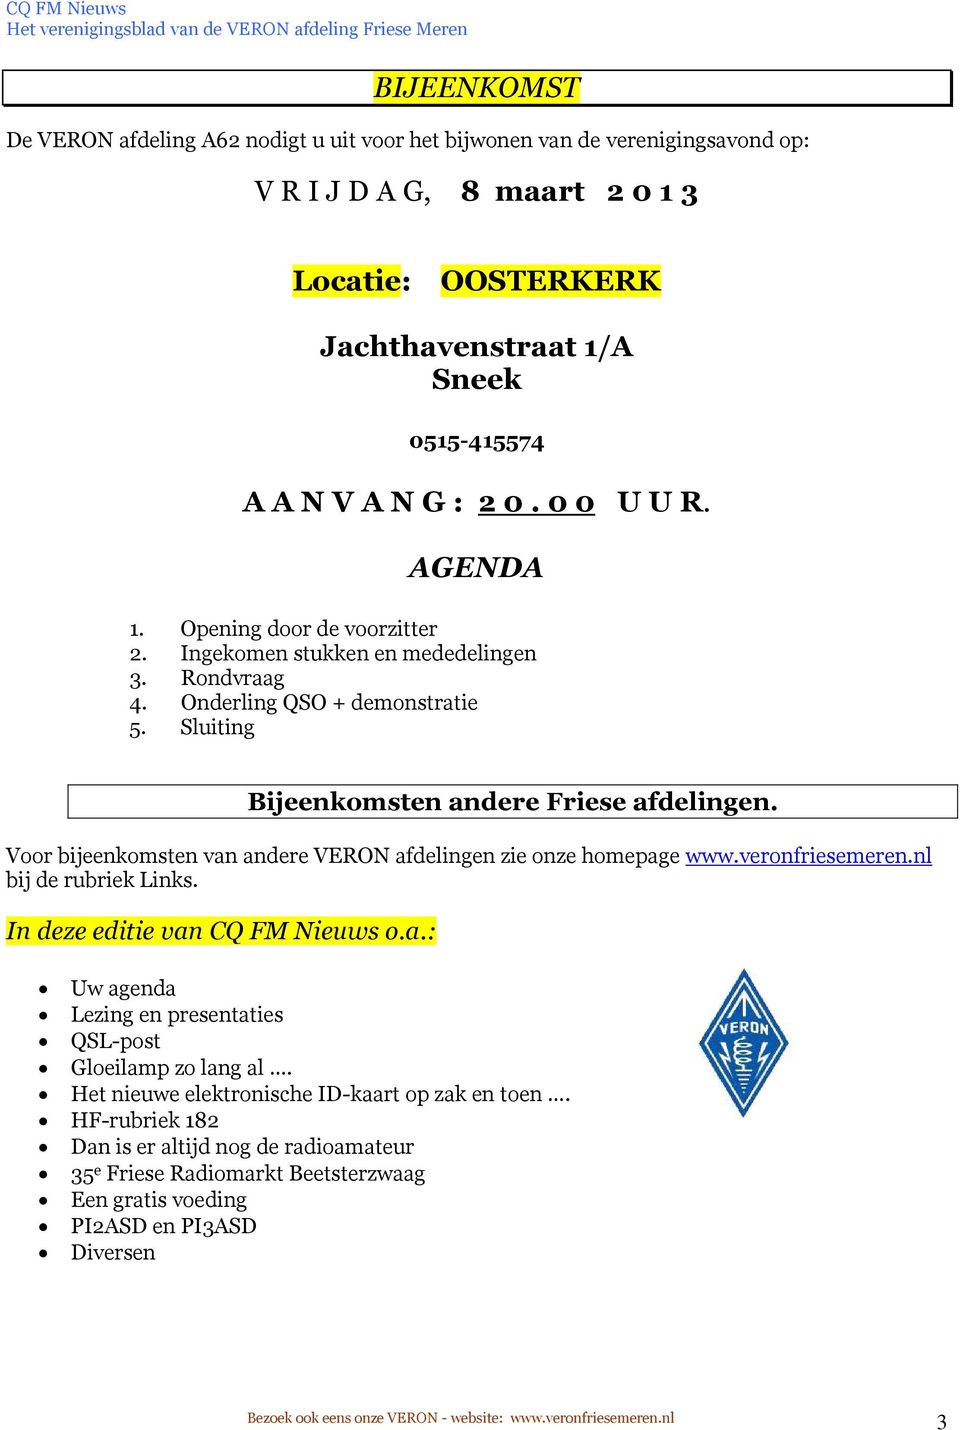 Voor bijeenkomsten van andere VERON afdelingen zie onze homepage www.veronfriesemeren.nl bij de rubriek Links. In deze editie van CQ FM Nieuws o.a.: Uw agenda Lezing en presentaties QSL-post Gloeilamp zo lang al.